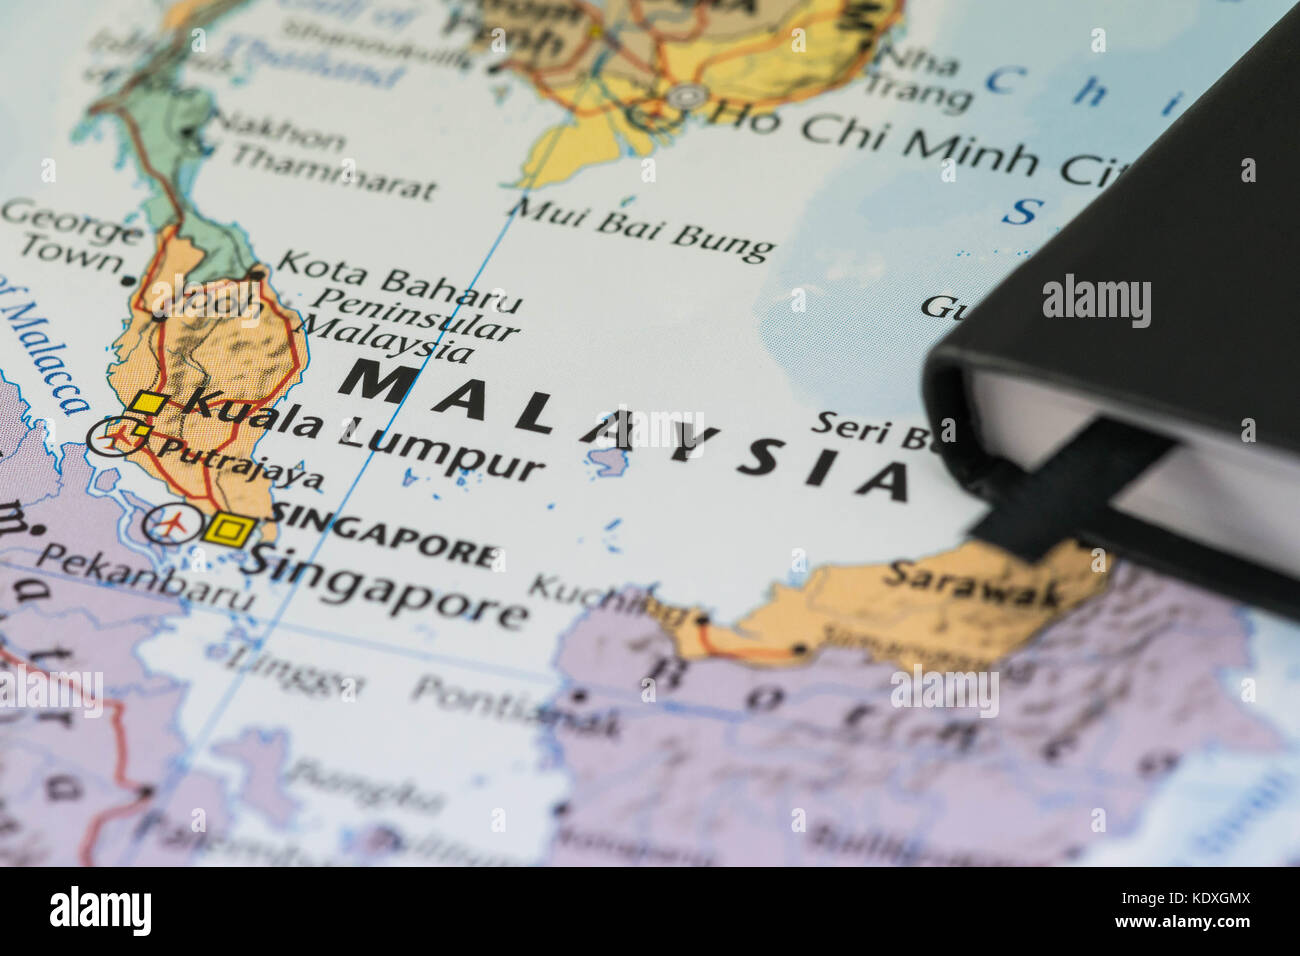 Le note personali di un viaggiatore la pianificazione di un viaggio in Malaysia Foto Stock